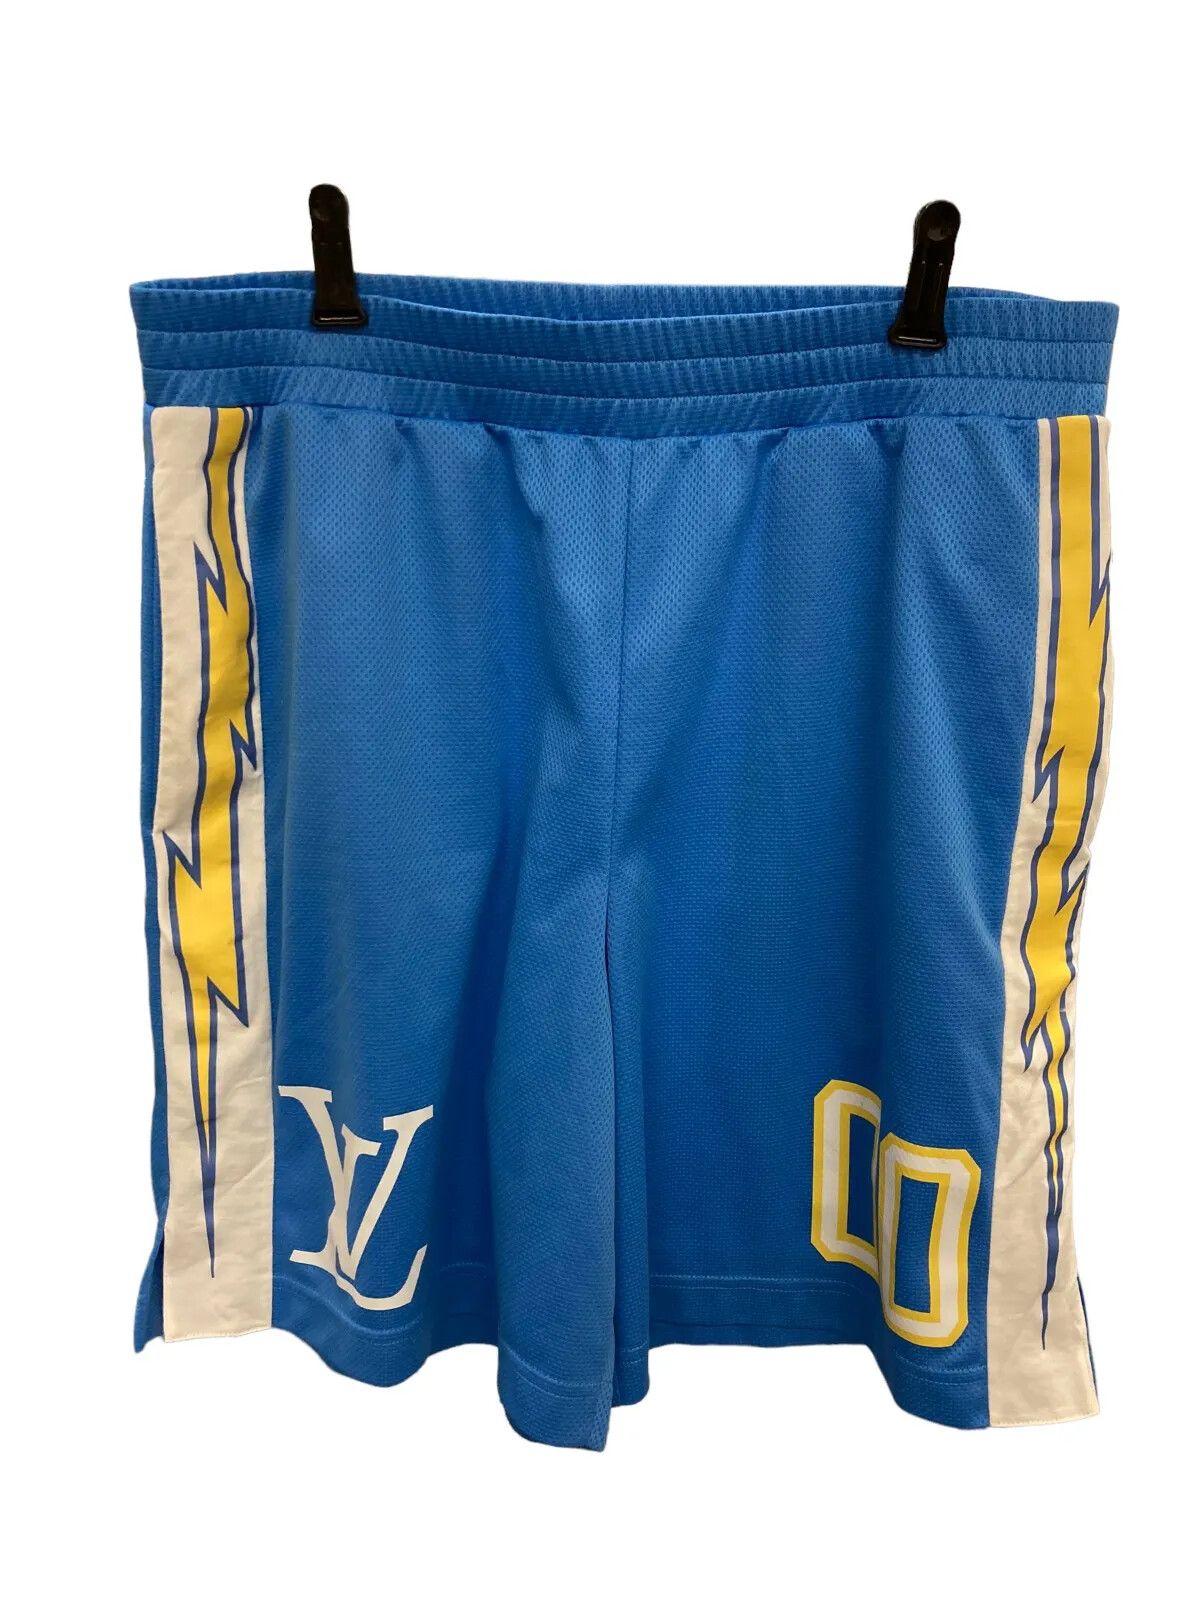 Louis Vuitton Men's Virgil Abloh Sporty Patch Shorts